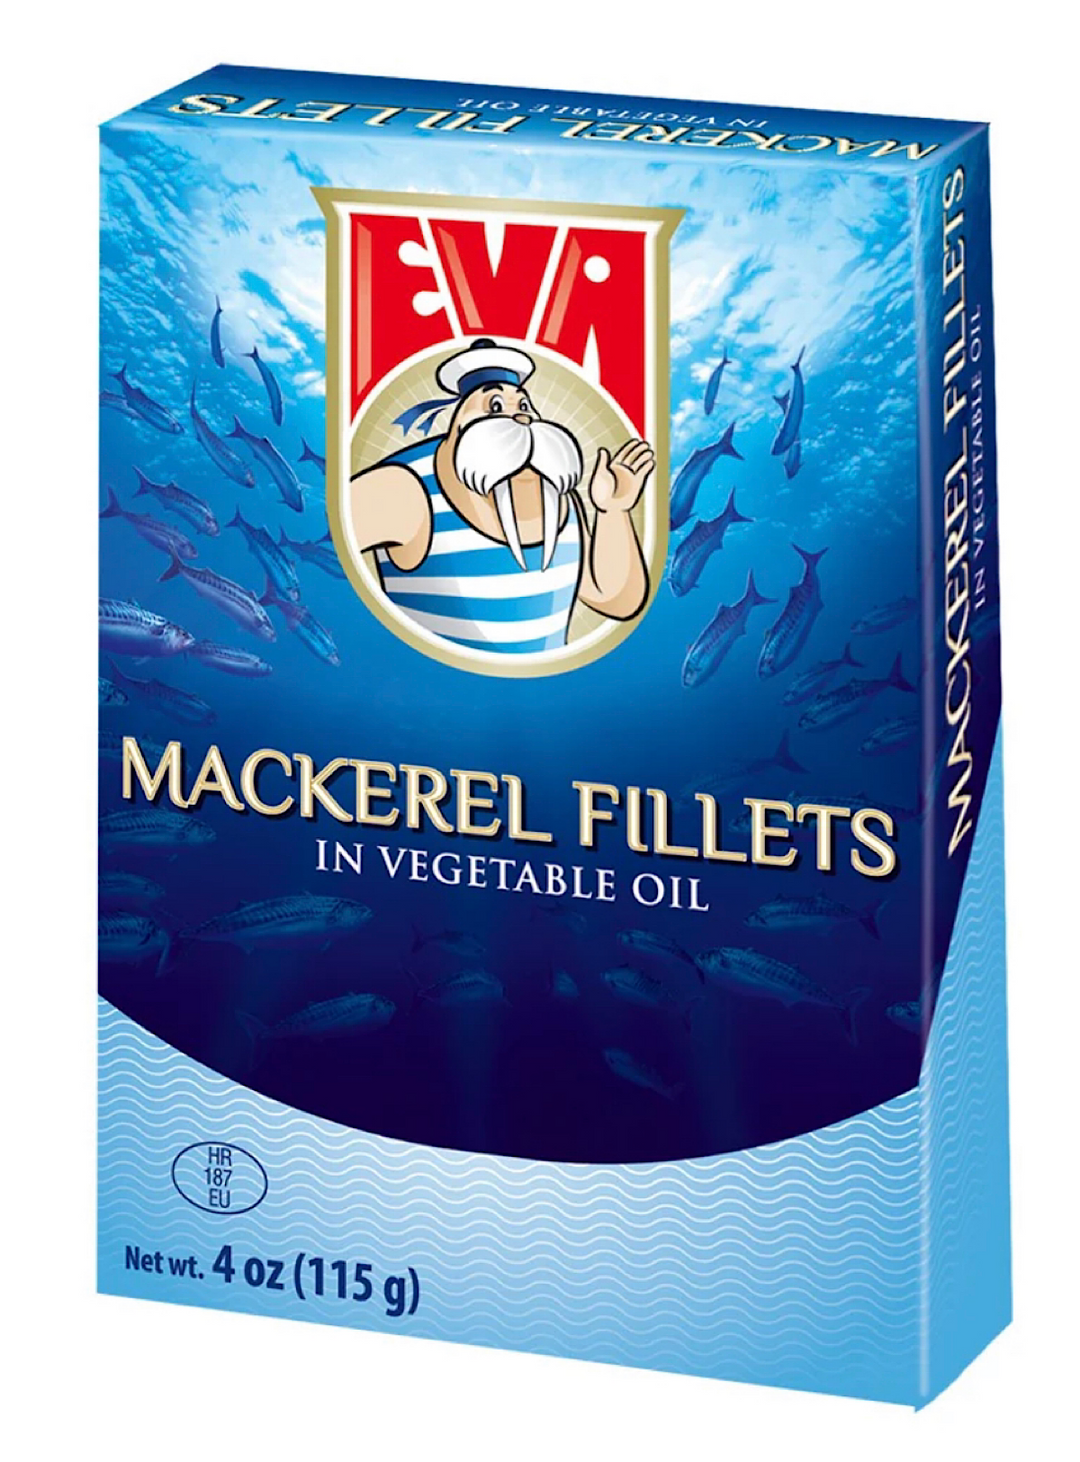 Mackerel Fillet Veg Oil - Eva - 115g